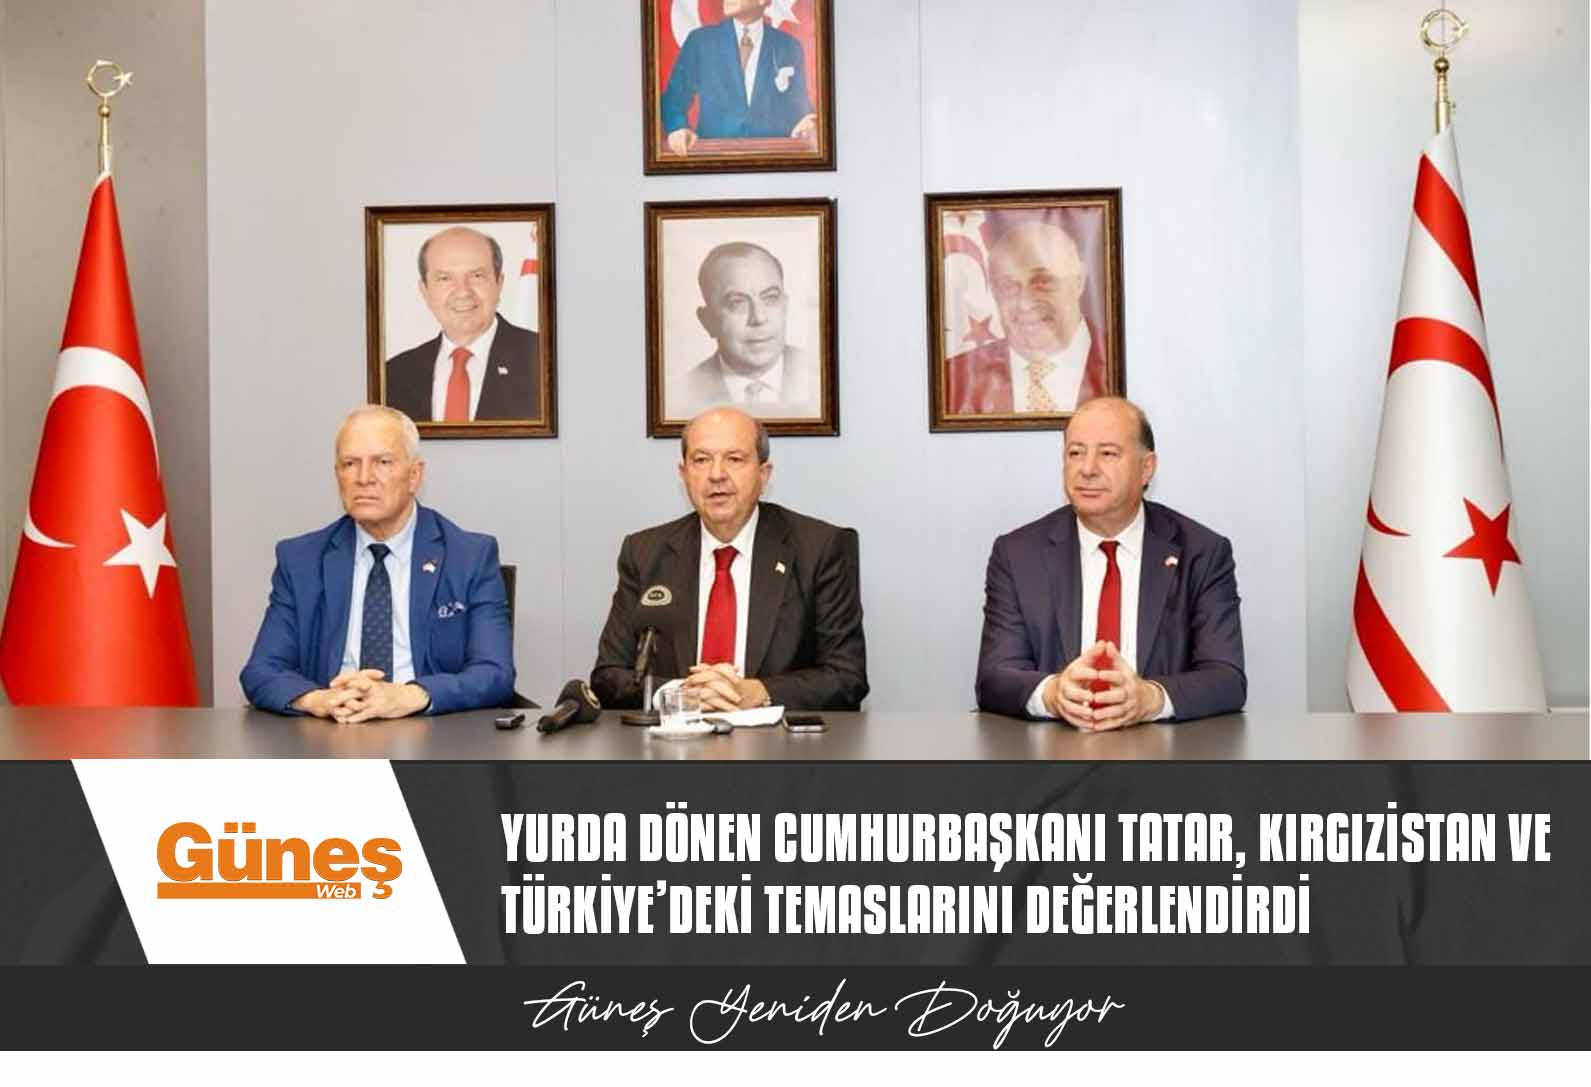 Yurda Dönen Cumhurbaşkanı Tatar, Kırgızistan Ve Türkiye’deki Temaslarını Değerlendirdi